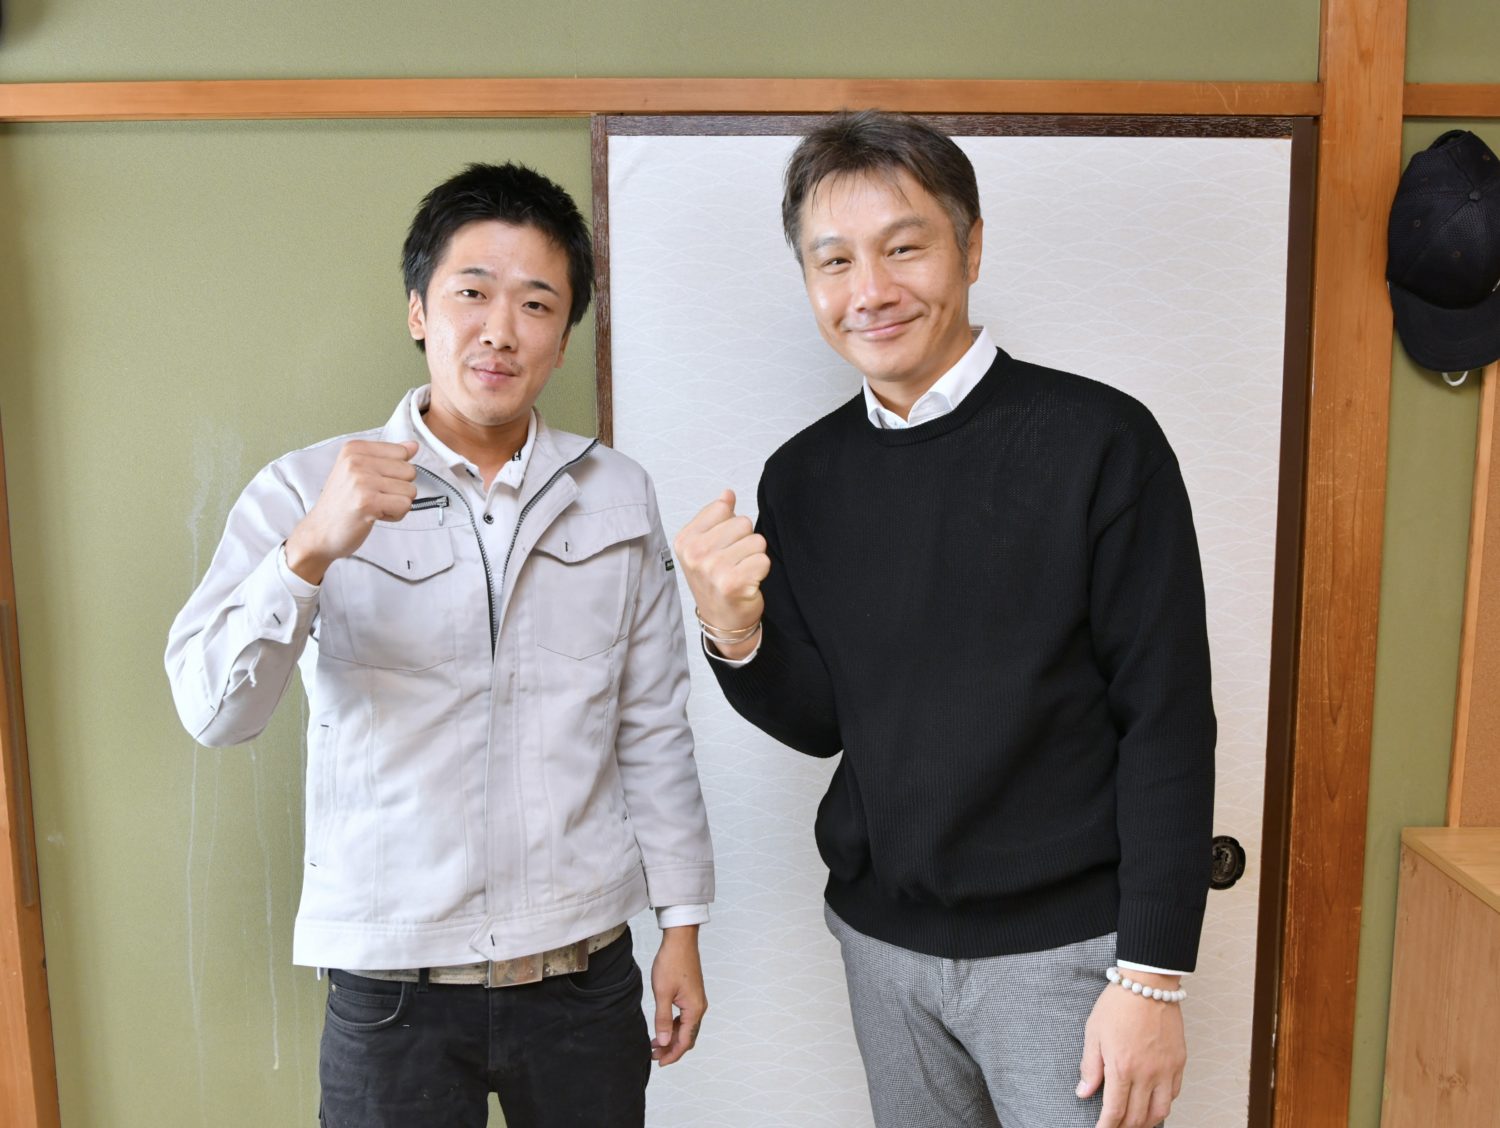 ボクシング元世界チャンピオンの畑山　隆則さんと対談しました。